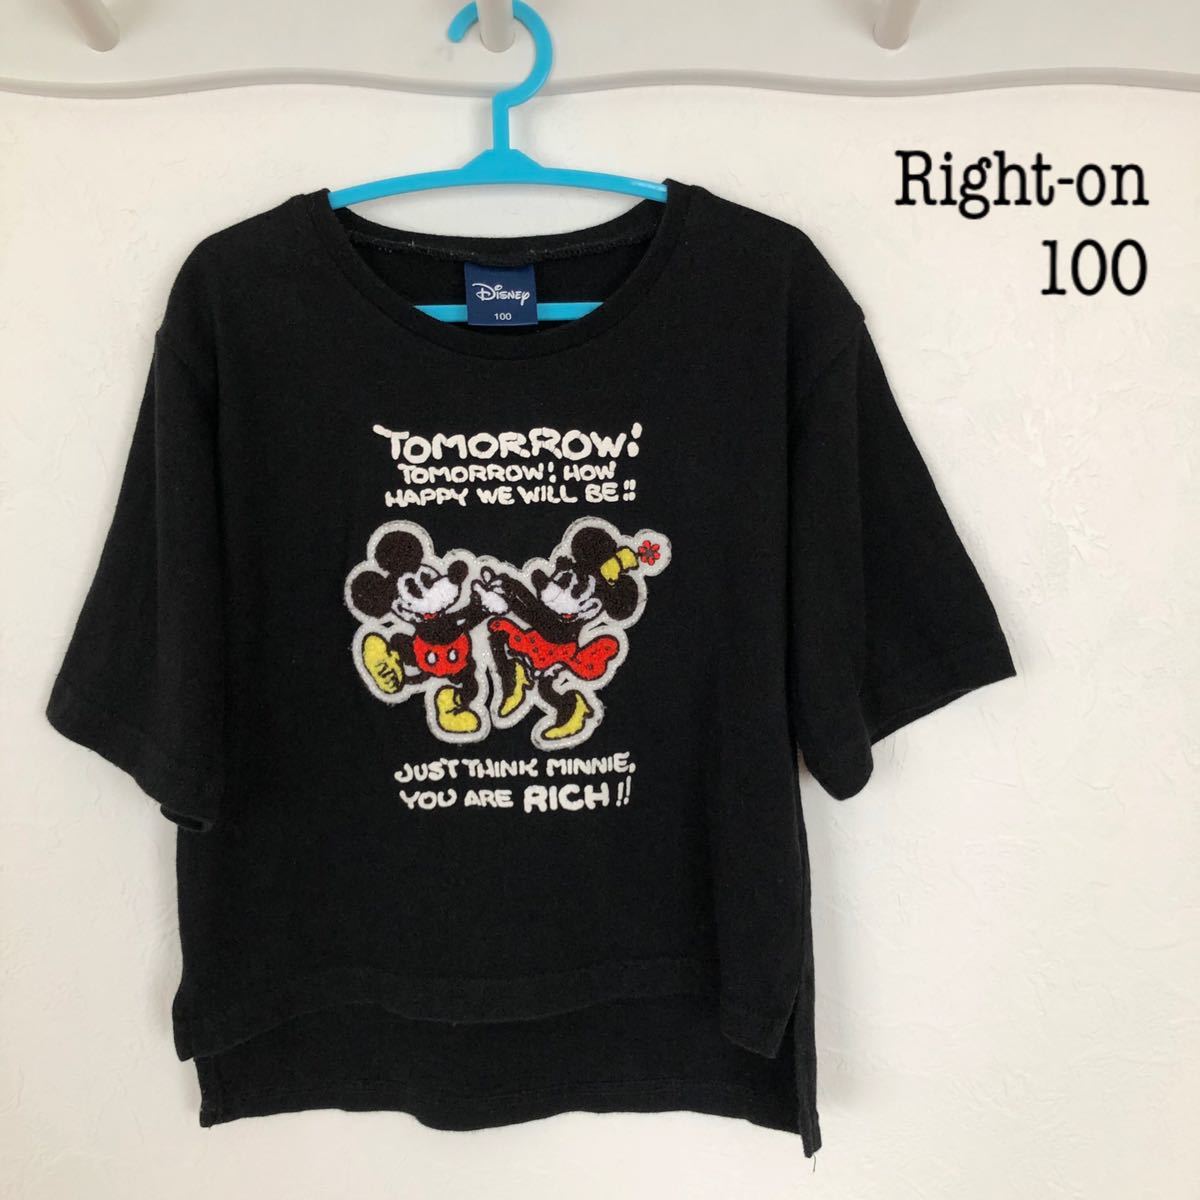 Right On ミッキー Disney Tシャツ サイズ100 ライトオン 百貨店 Tシャツ